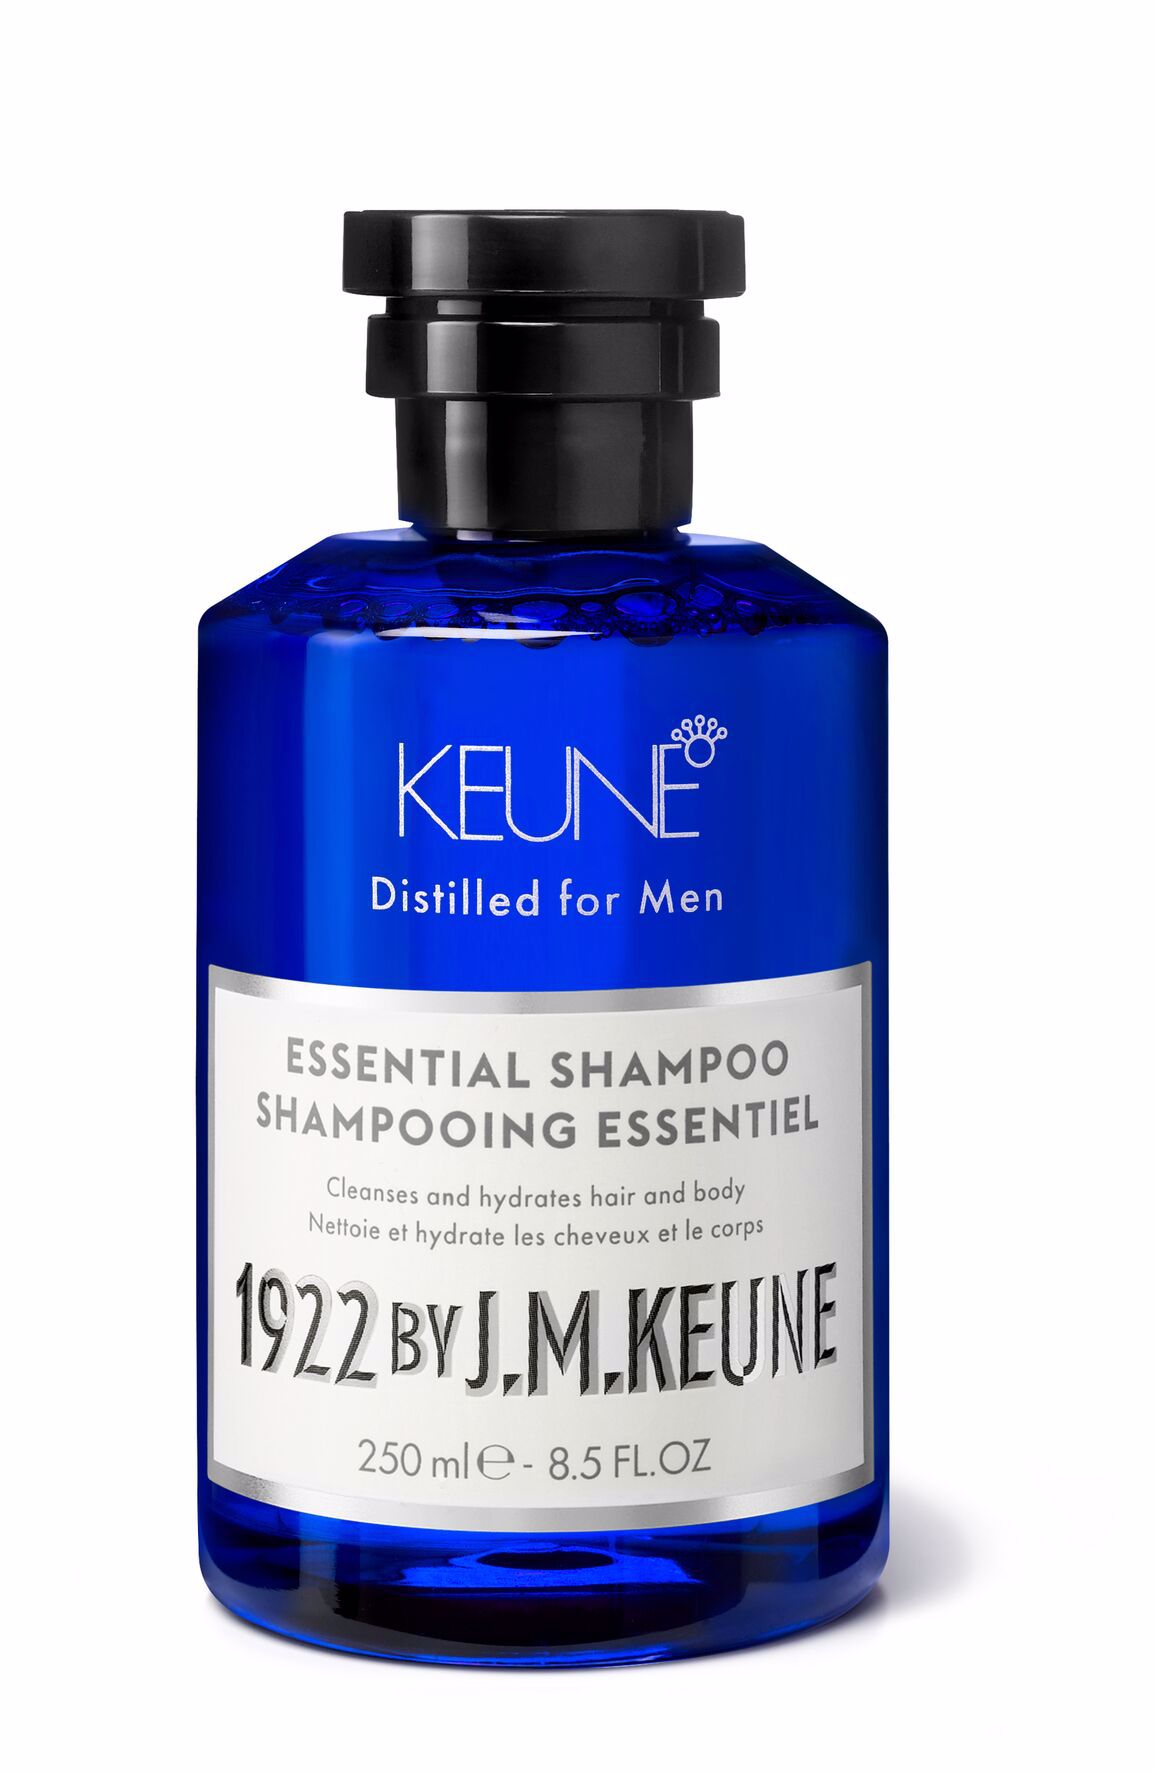 Das Essential Shampoo für Männer ist ideal für die tägliche Reinigung von Haar, Bart und Körper geeignet. Mit Kreatin und Bambusextrakt für kräftiges, voluminöses Haar. Erhältlich auf Keune.ch.